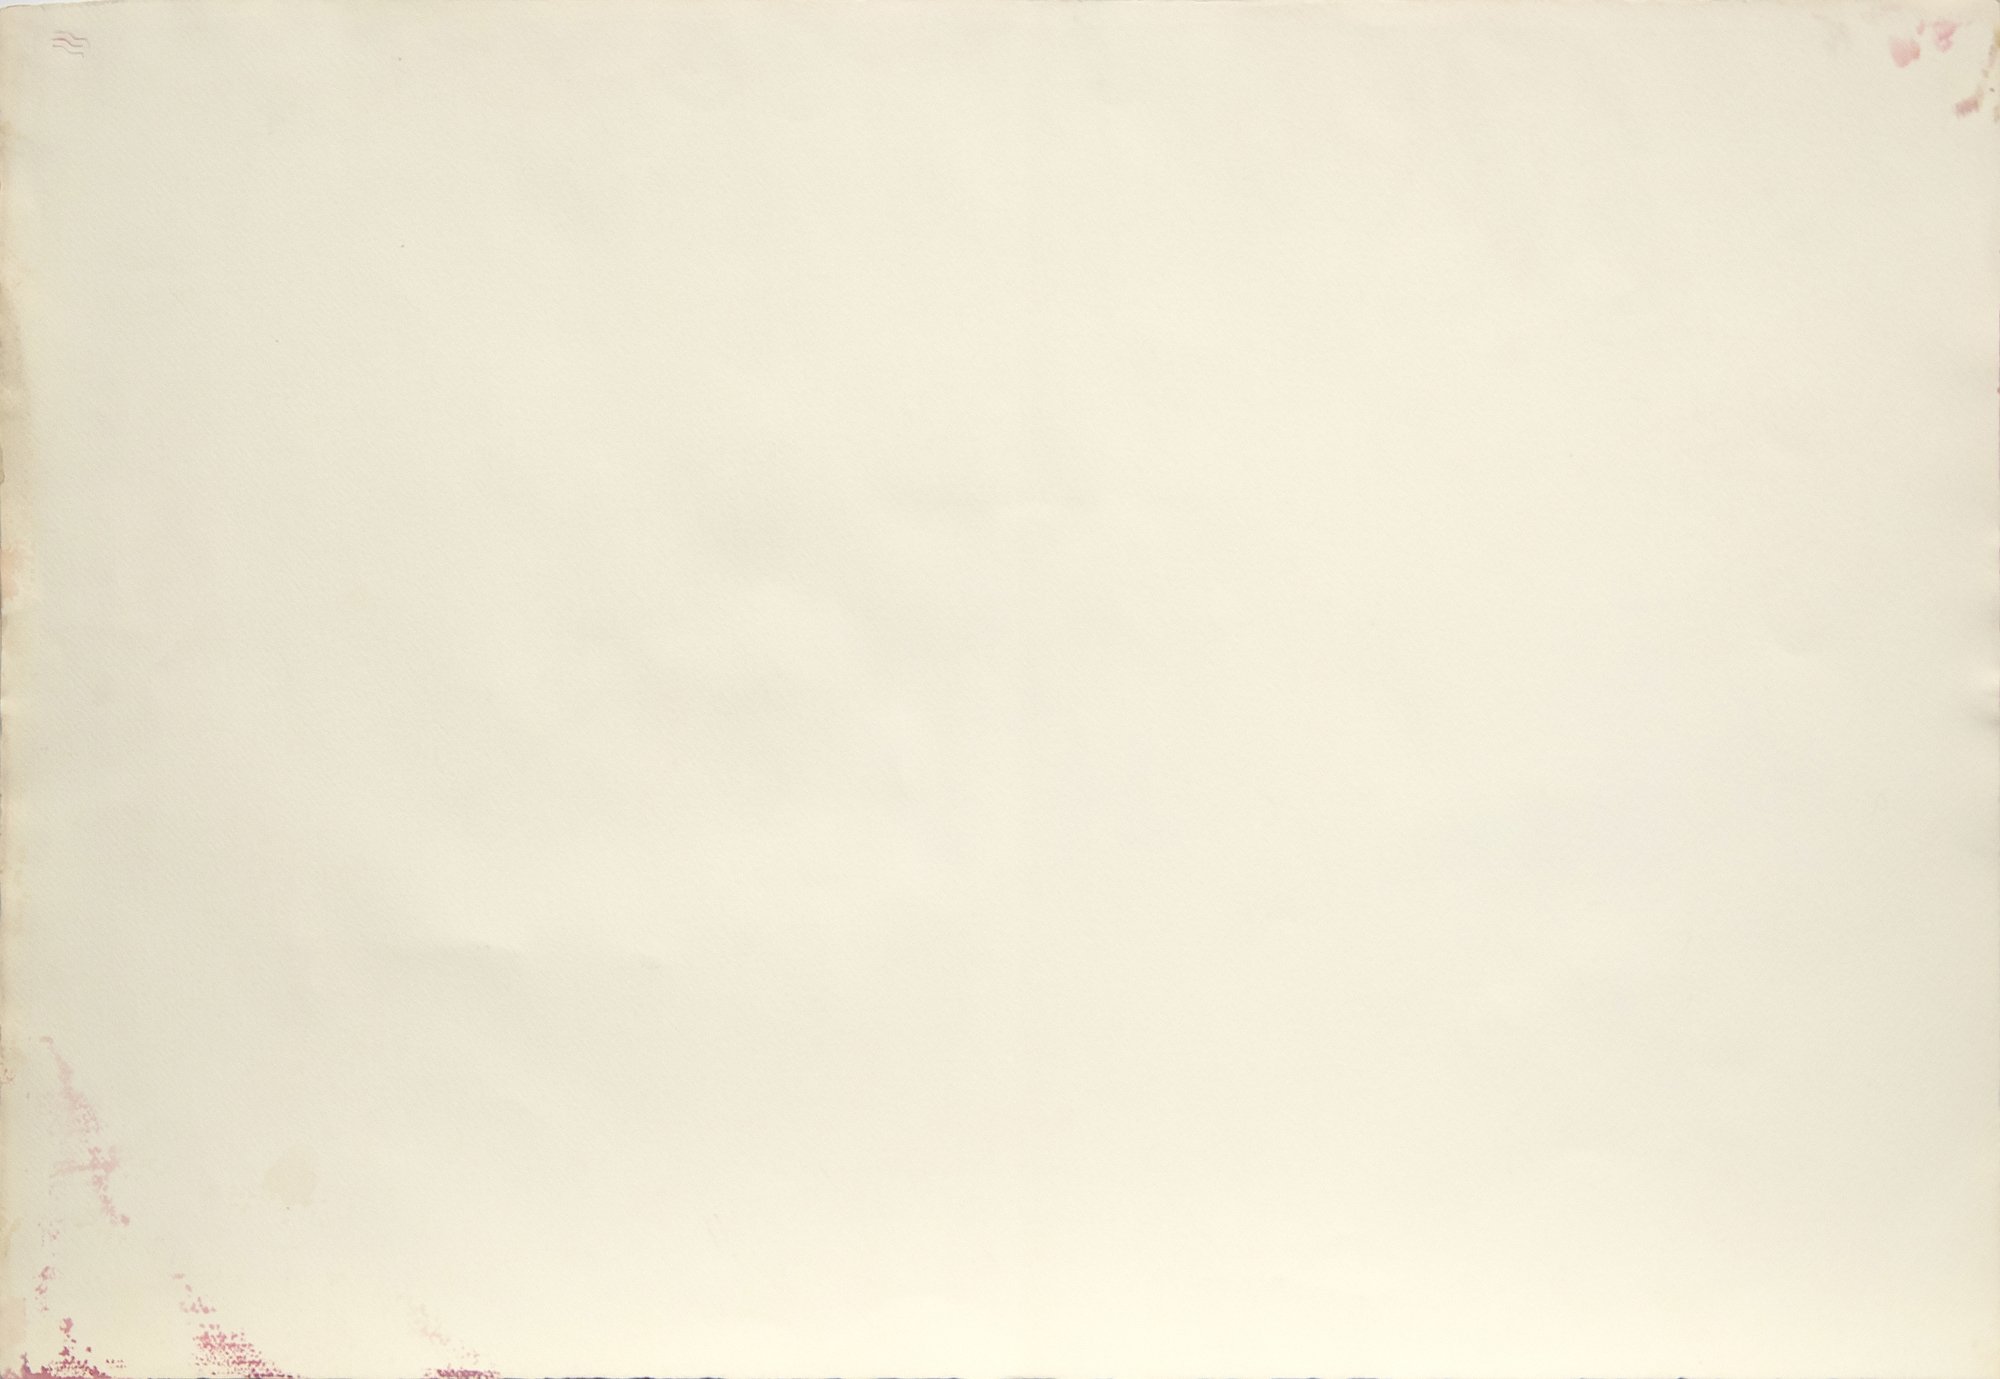 PAUL JENKINS - Sin título - acuarela y tinta sobre papel - 29 3/4 x 42 3/4 pulg.